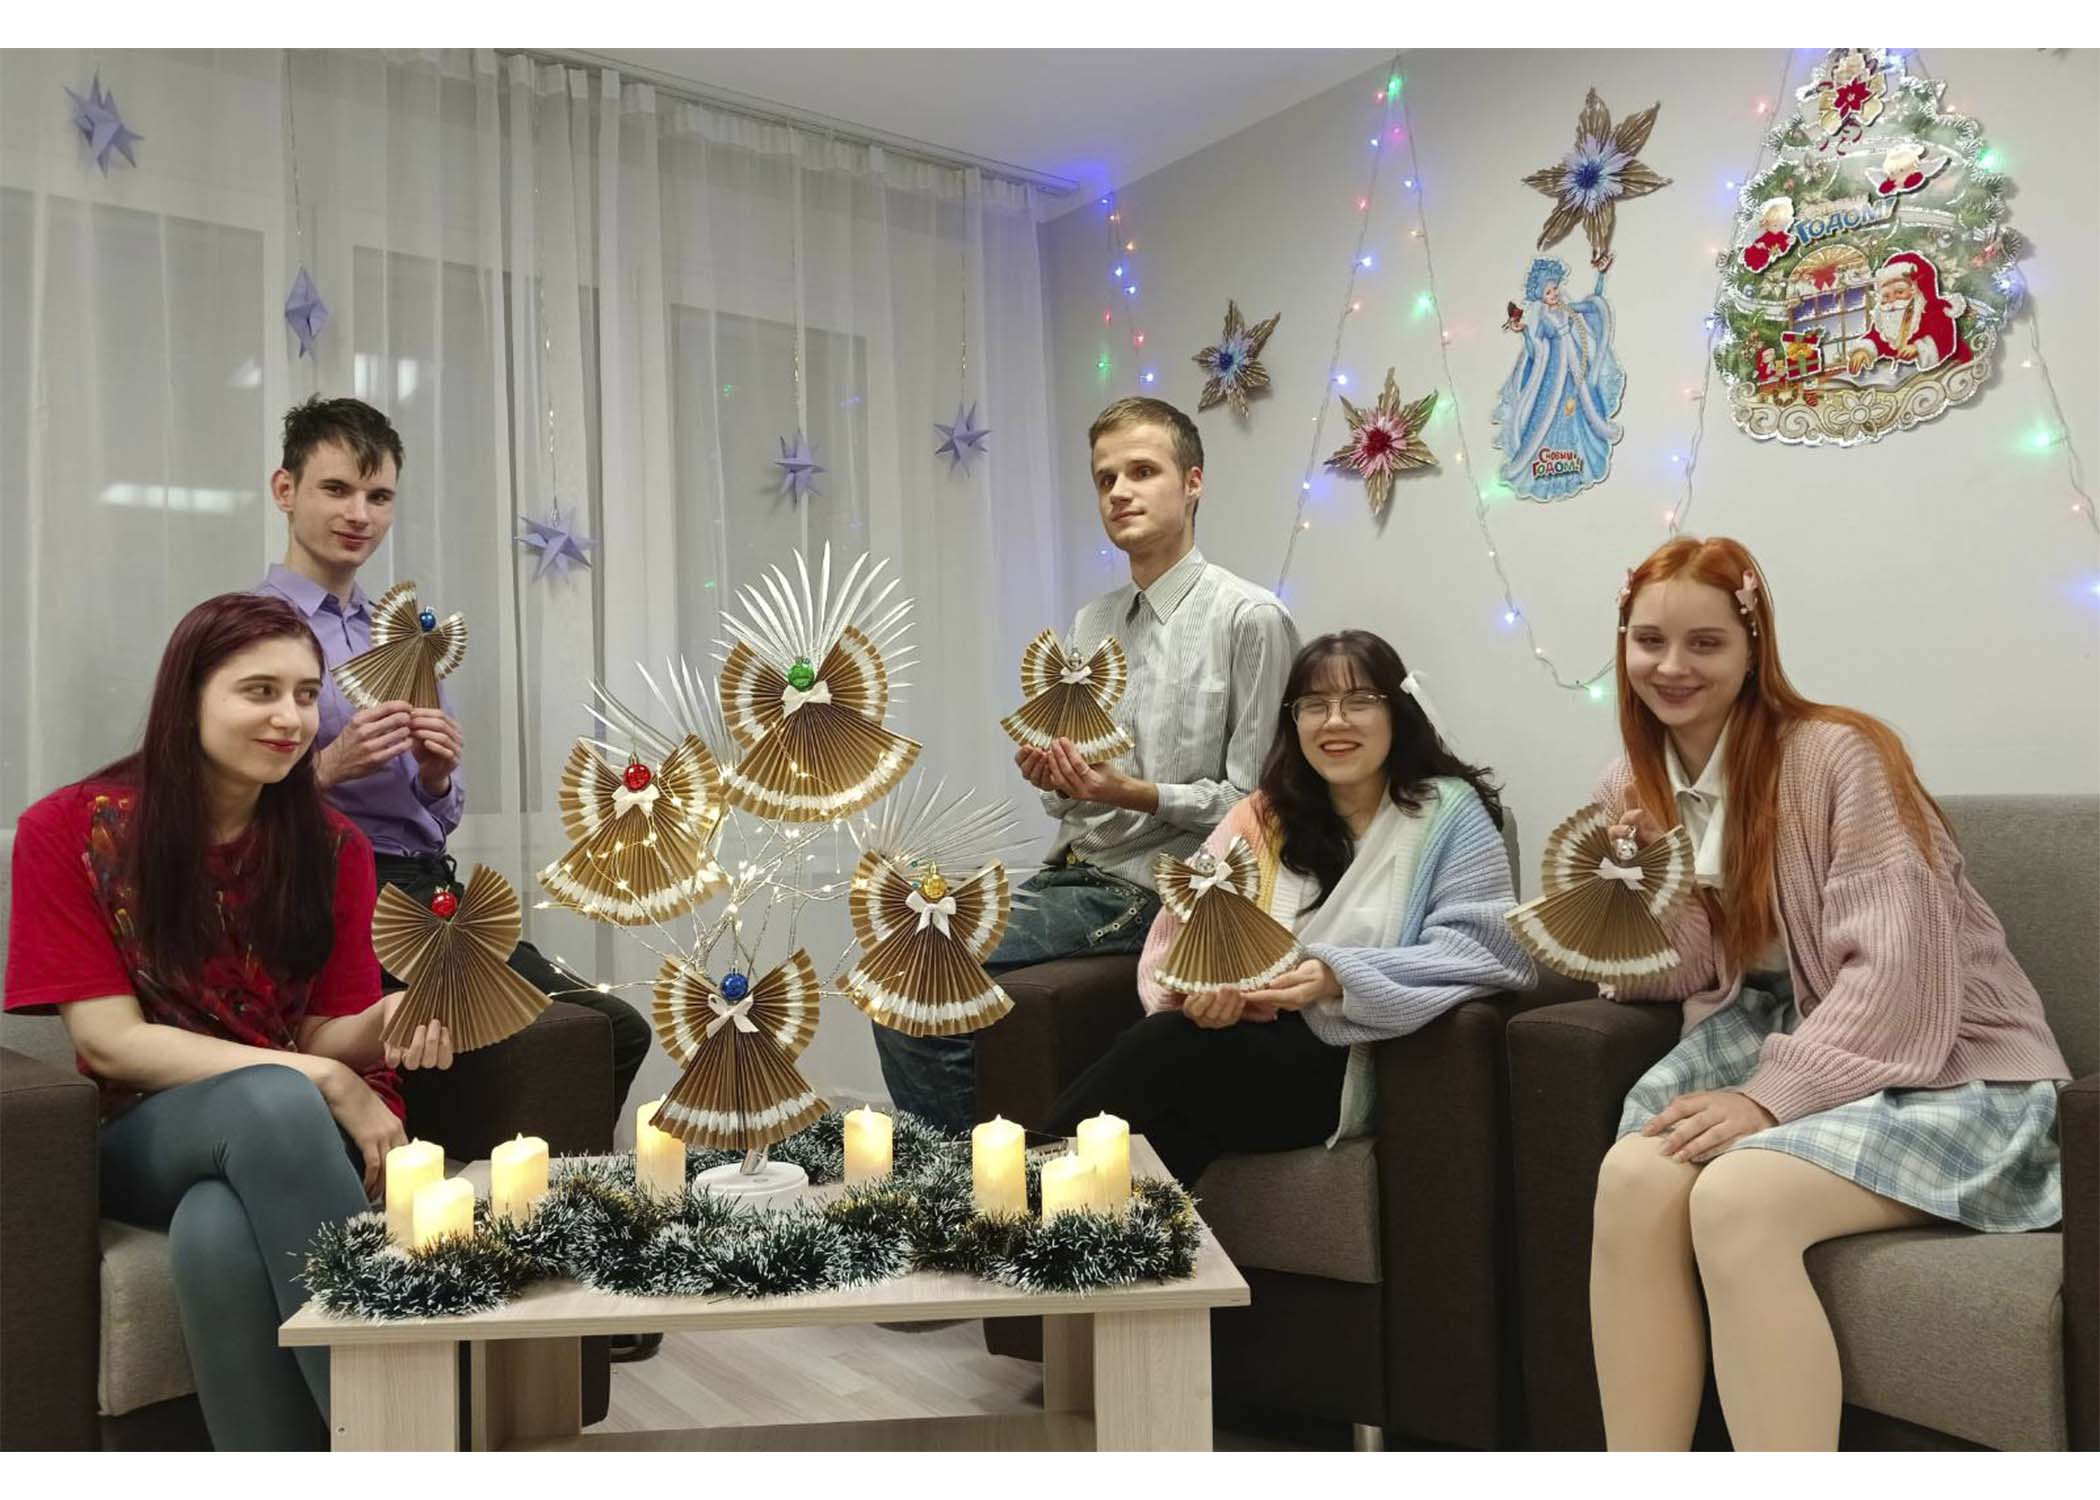 6 января, в канун праздника Рождества, в общежитии колледжа прошел мастер - класс "Под крылом Рождественского ангела", где царила атмосфера добра и творчества. Увлекательное занятие захватило всех присутствующих.